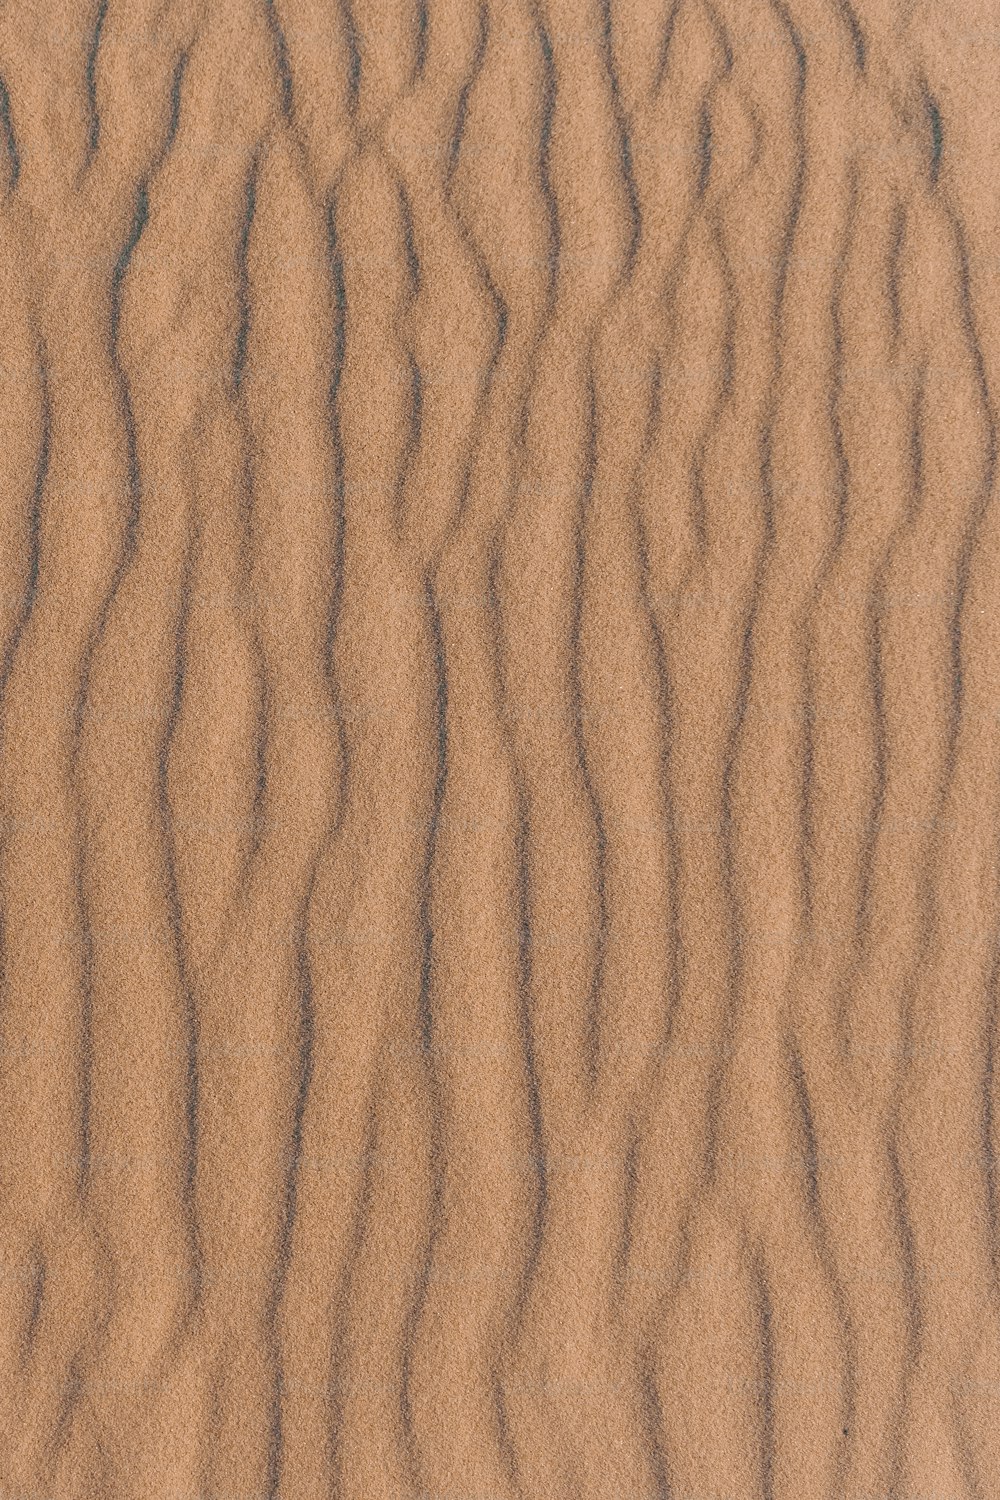 물결 모양의 선이있는 모래 언덕의 클로즈업